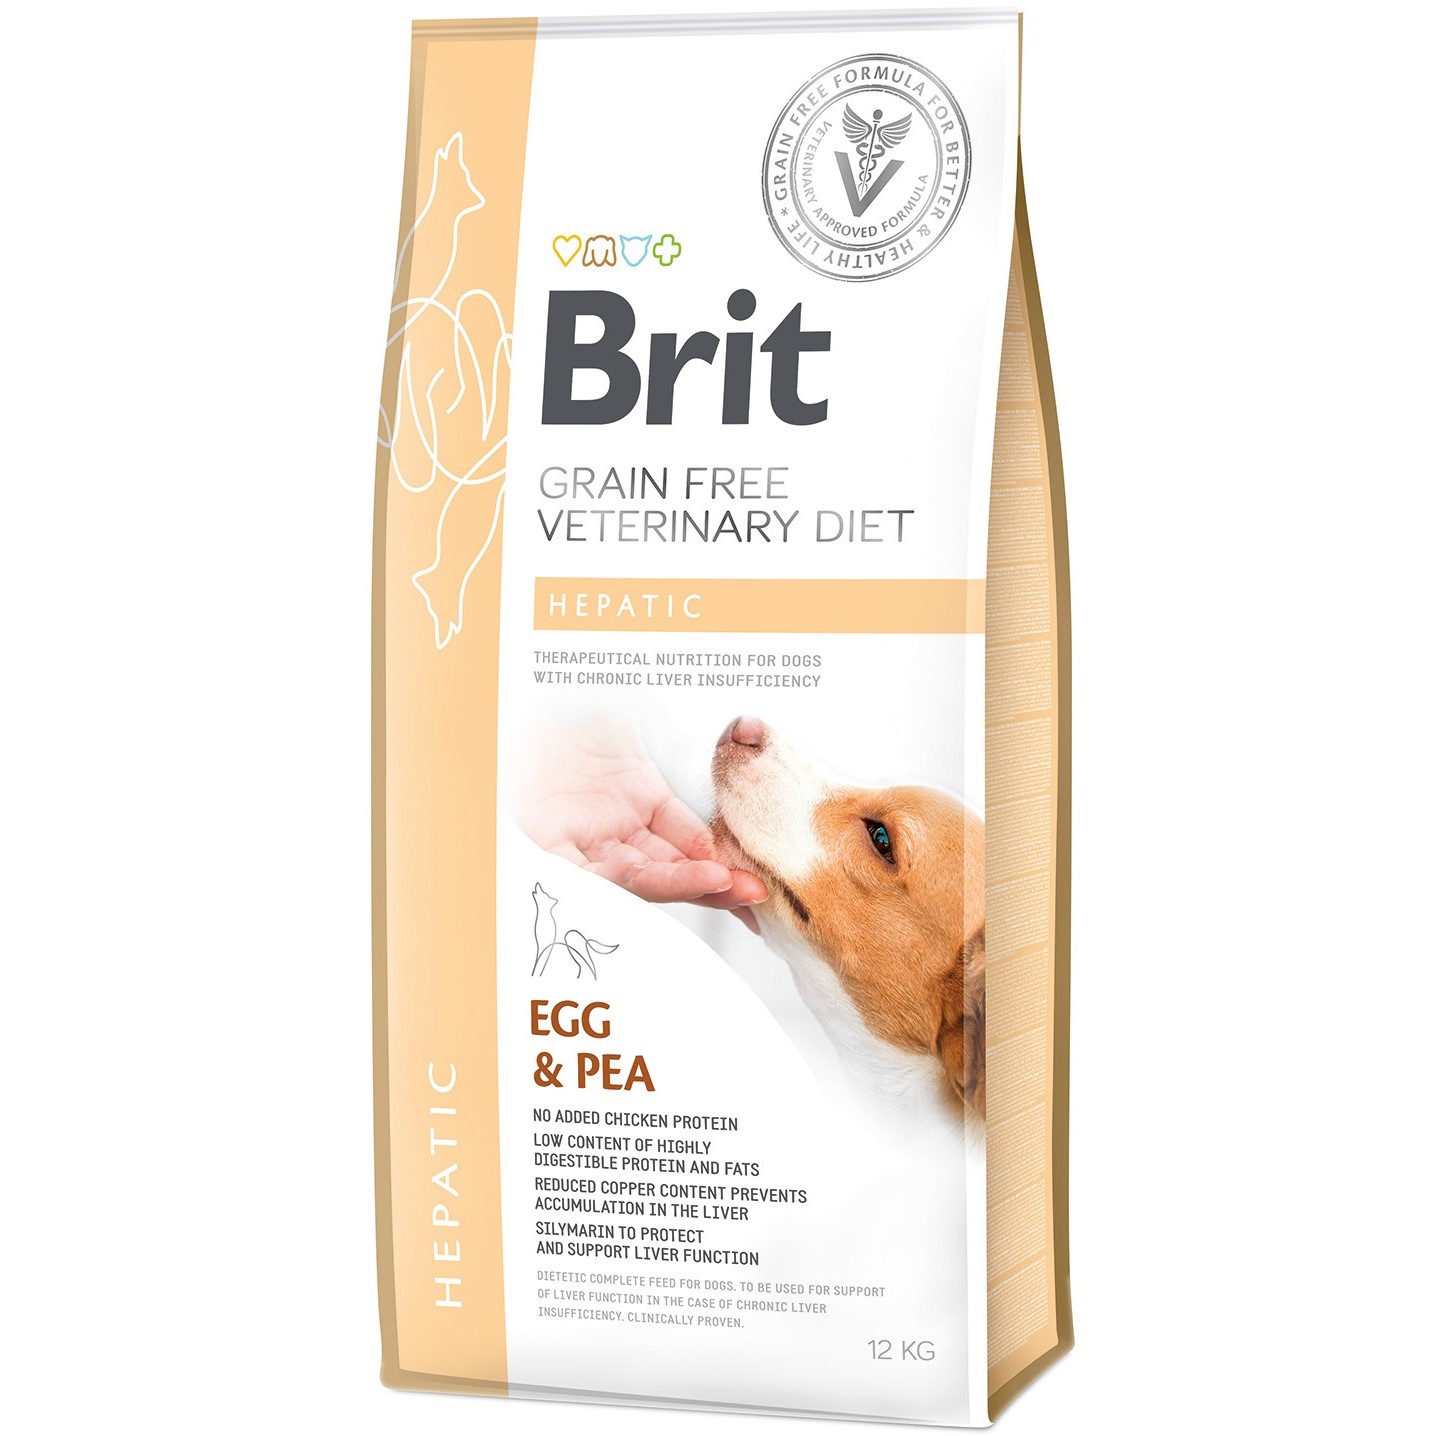 Сухой корм для взрослых собак Brit VetDiets Grain Free Hepatic при болезни печени с яйцом, горохом, бататом и гречкой 12 кг - фото 1